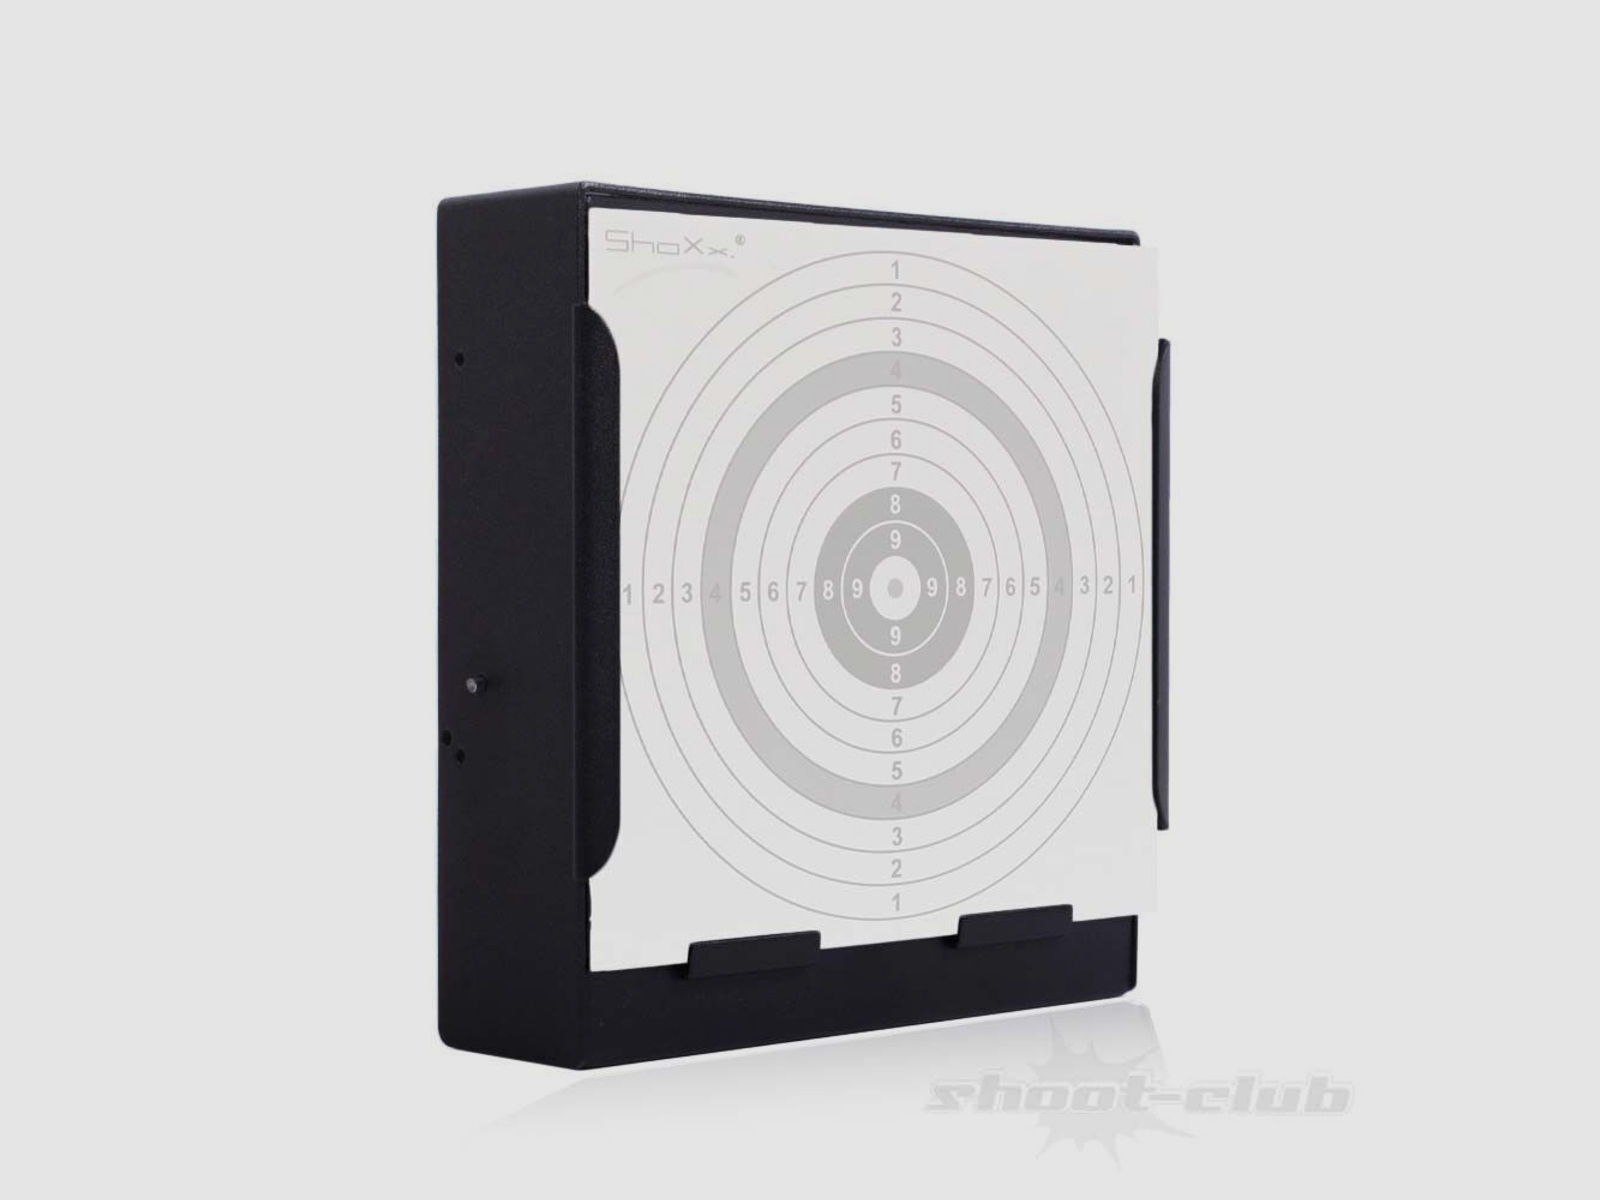 shoXx Scheibenkasten Kugelfang schwarz mit 100 Zielscheiben 10er 14x14 cm